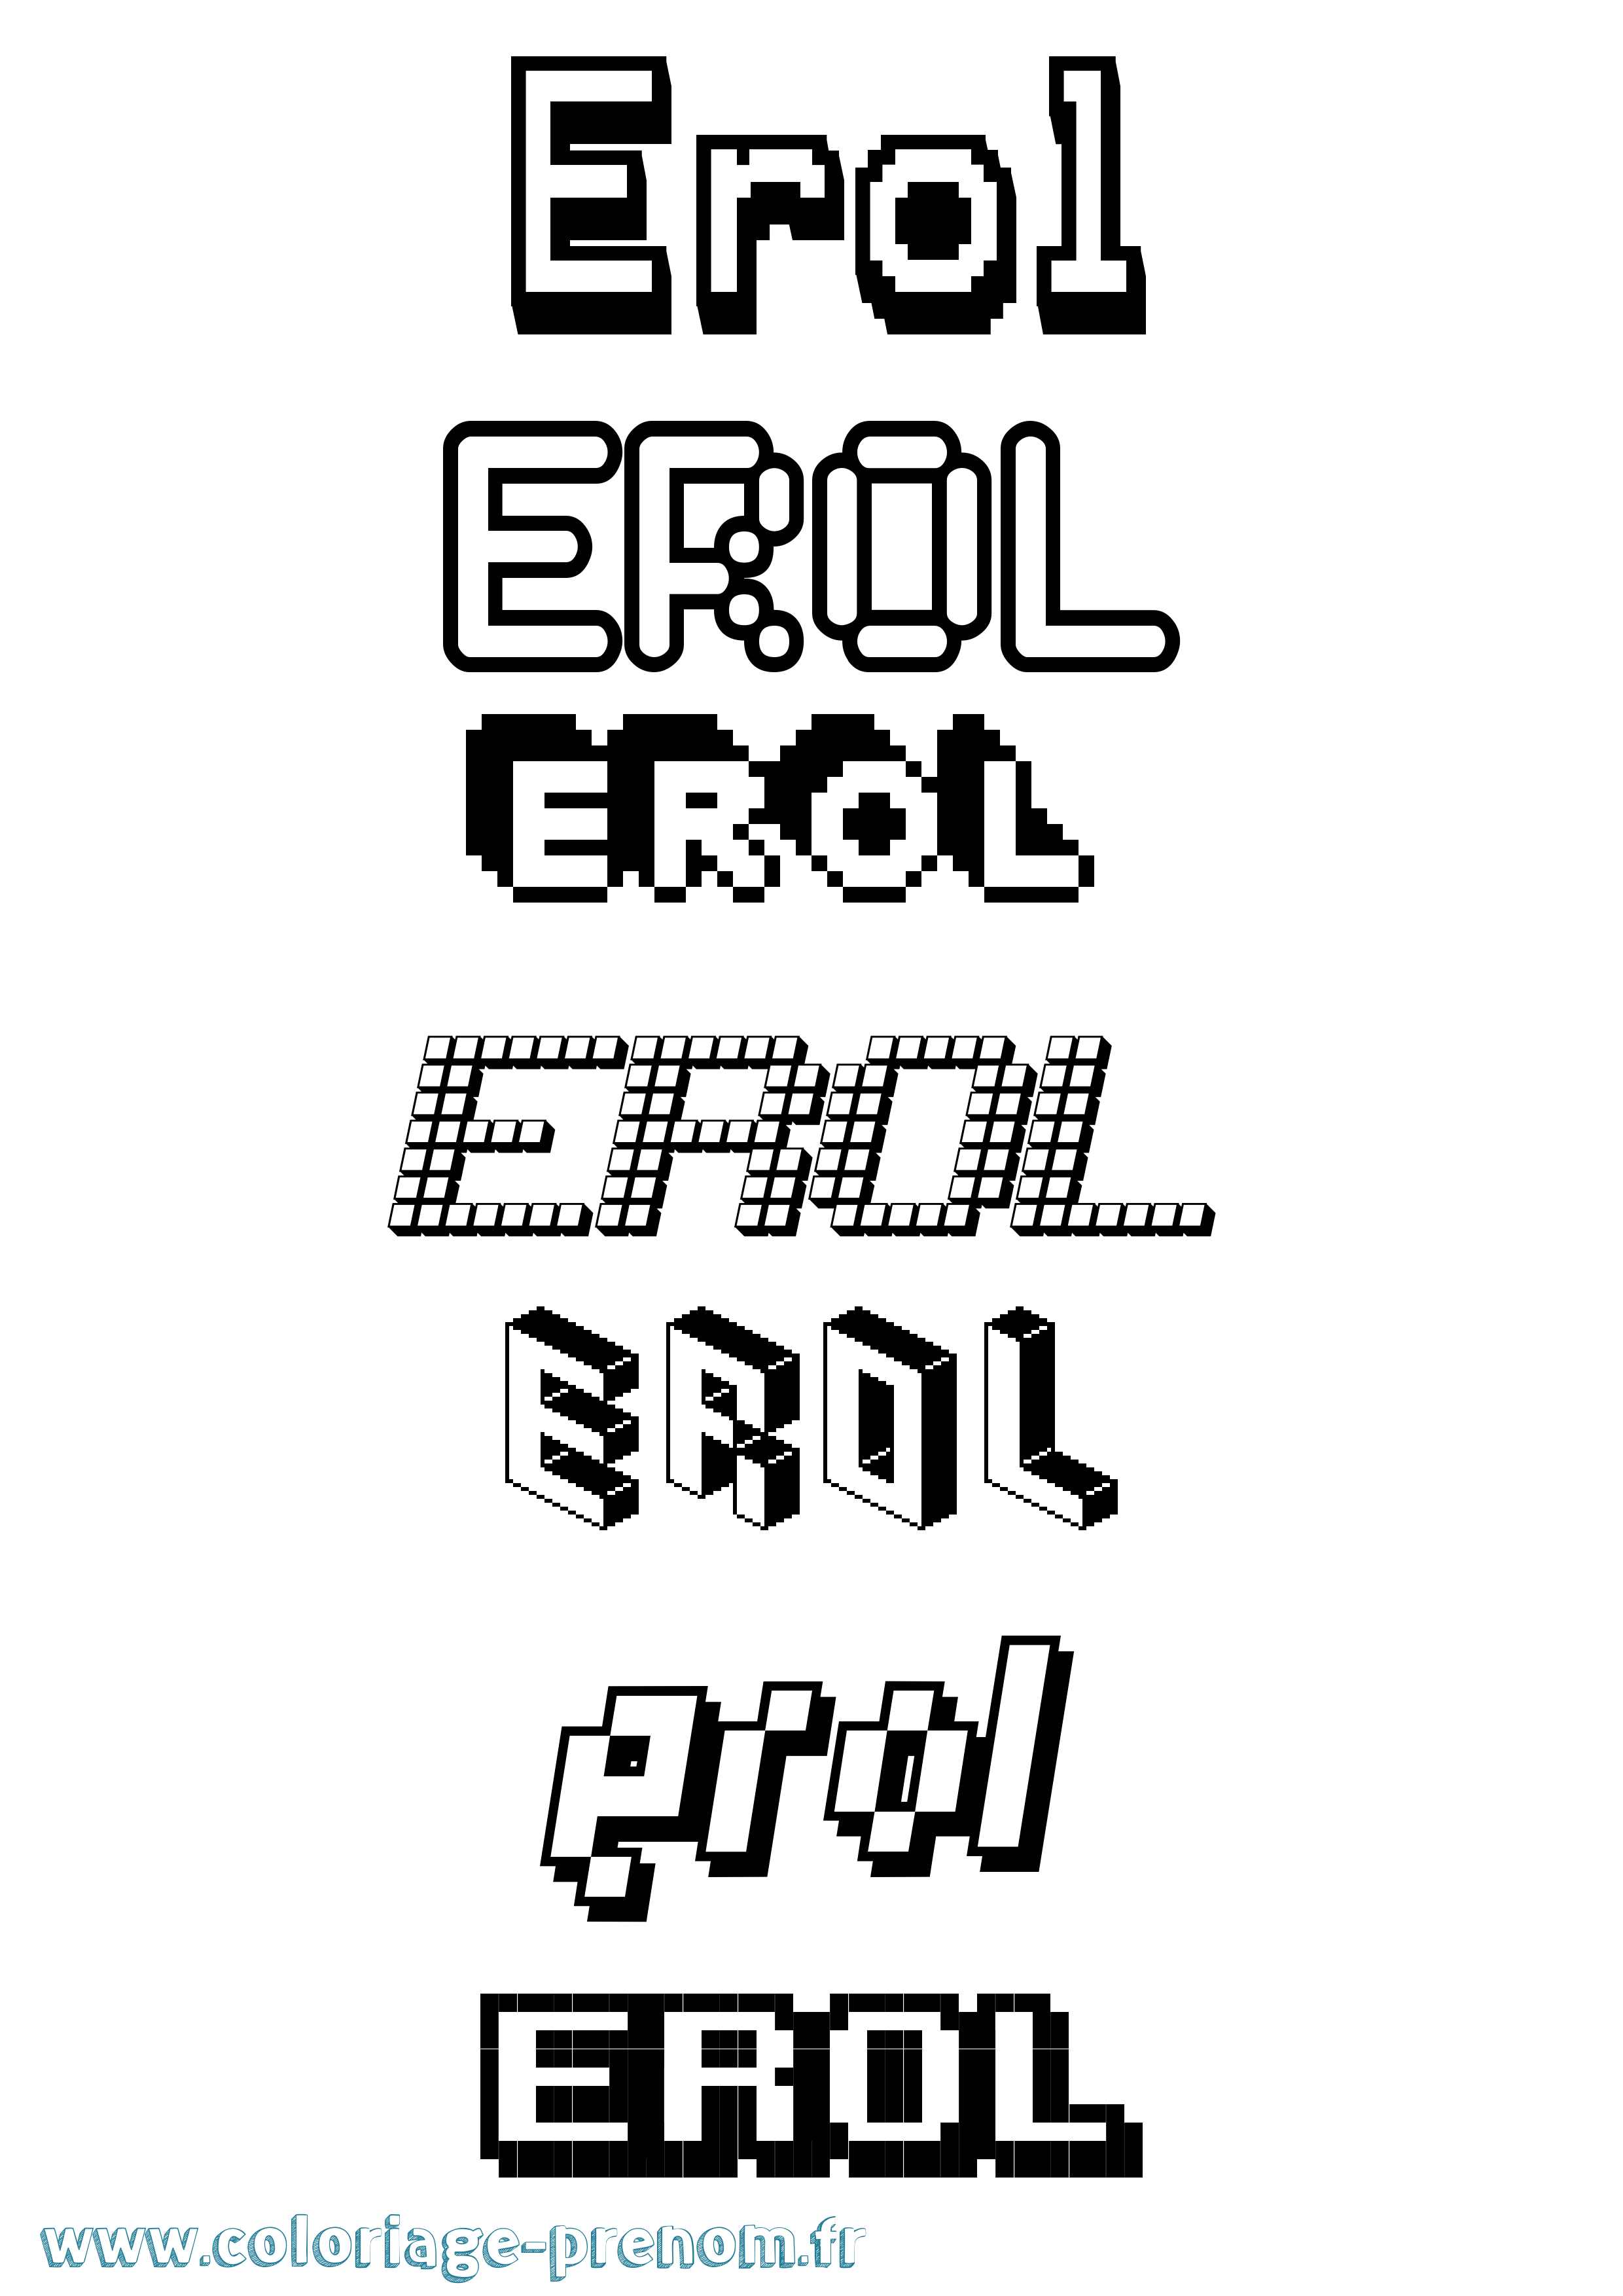 Coloriage prénom Erol Pixel